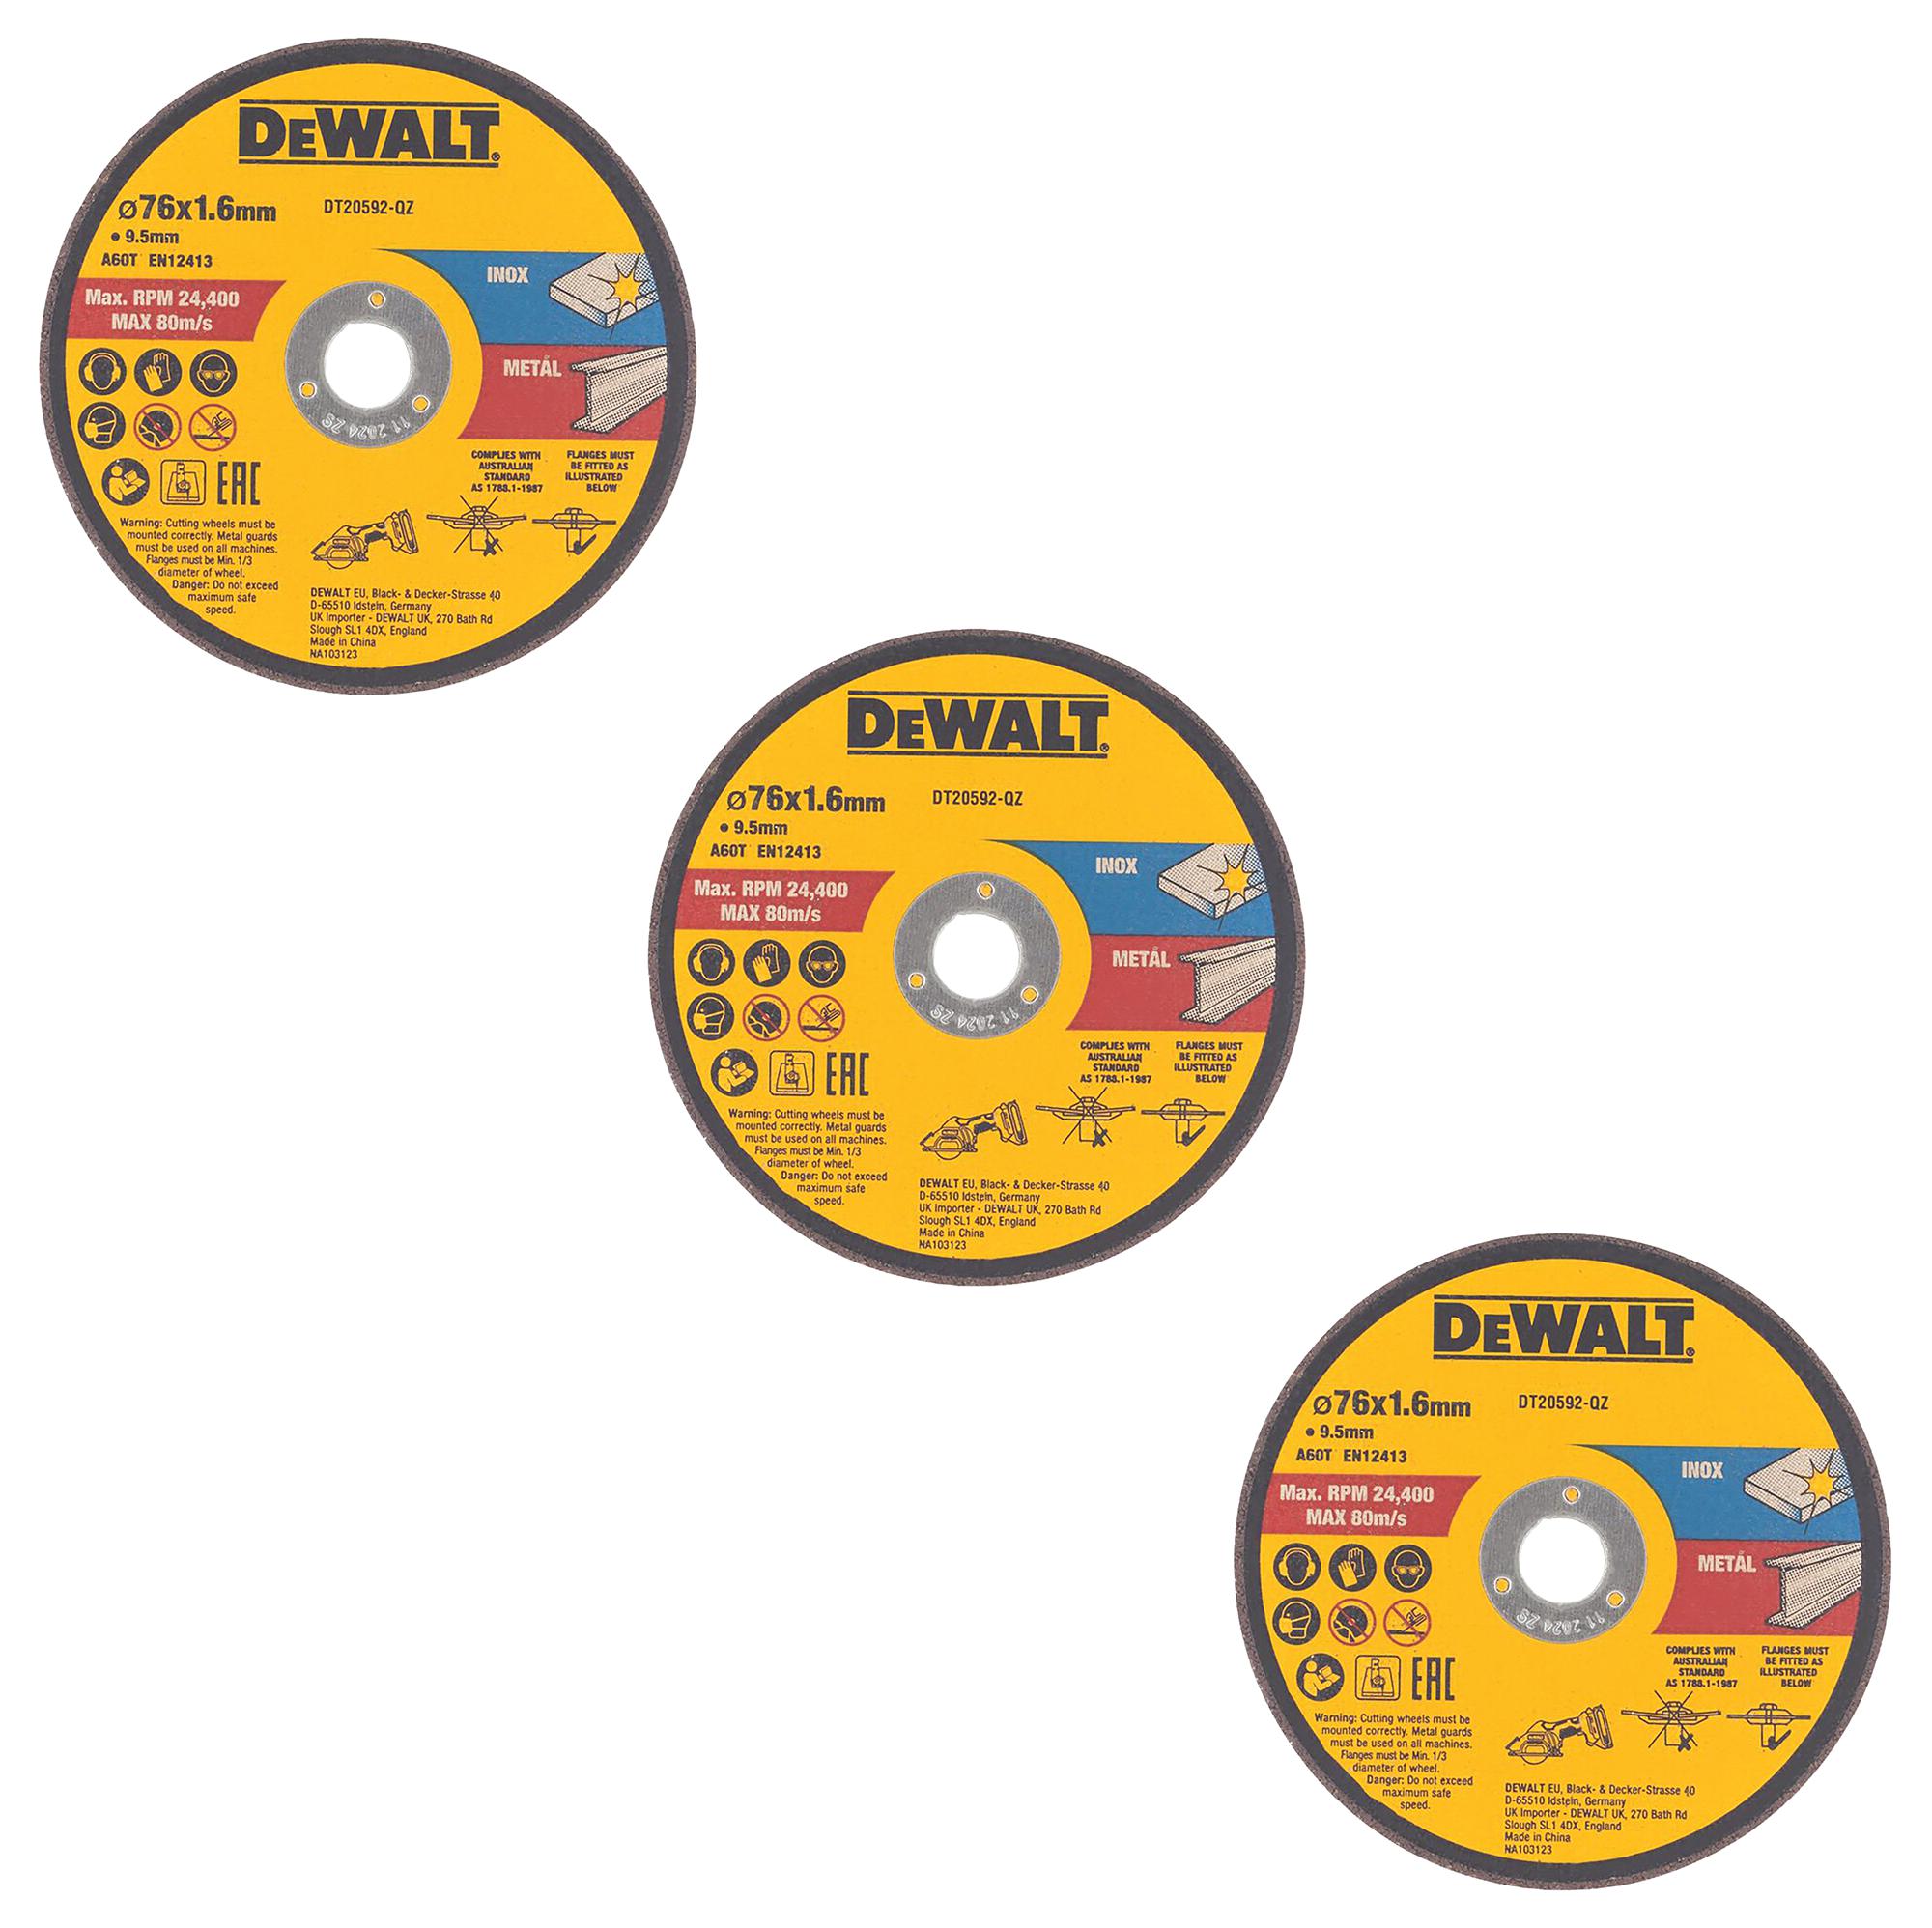 Dewalt Dt20592-Qz Grinding Disc, 80Mps, 9.5mm Bore